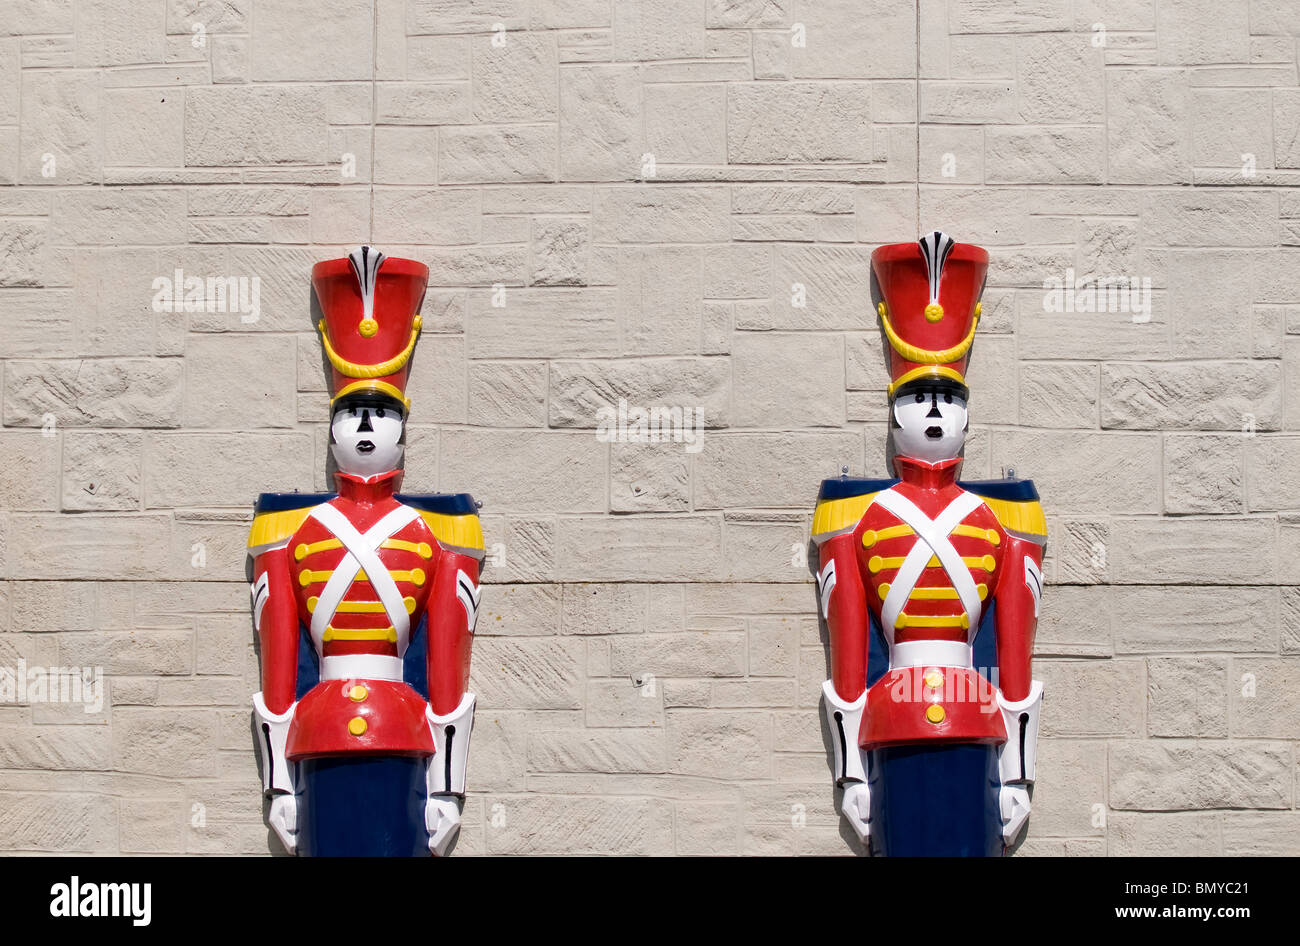 Deux modèles toy soldier contre un mur. Banque D'Images